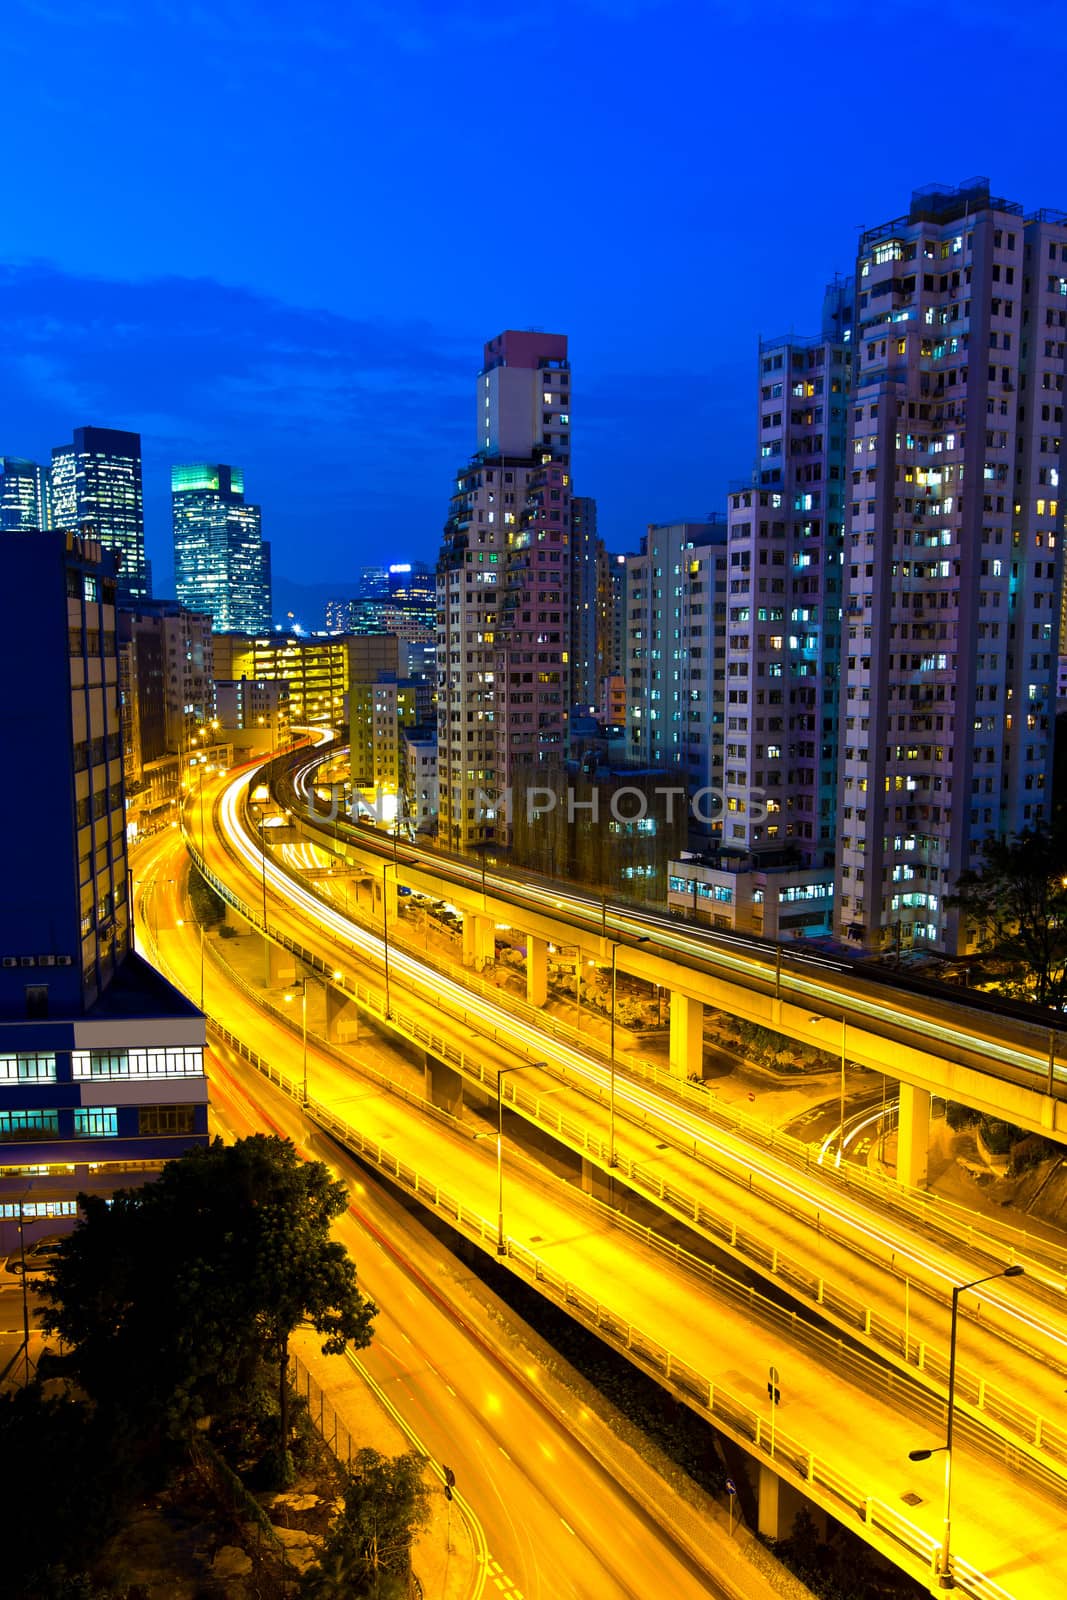 Elevated expressway in Hong Kong at night by kawing921